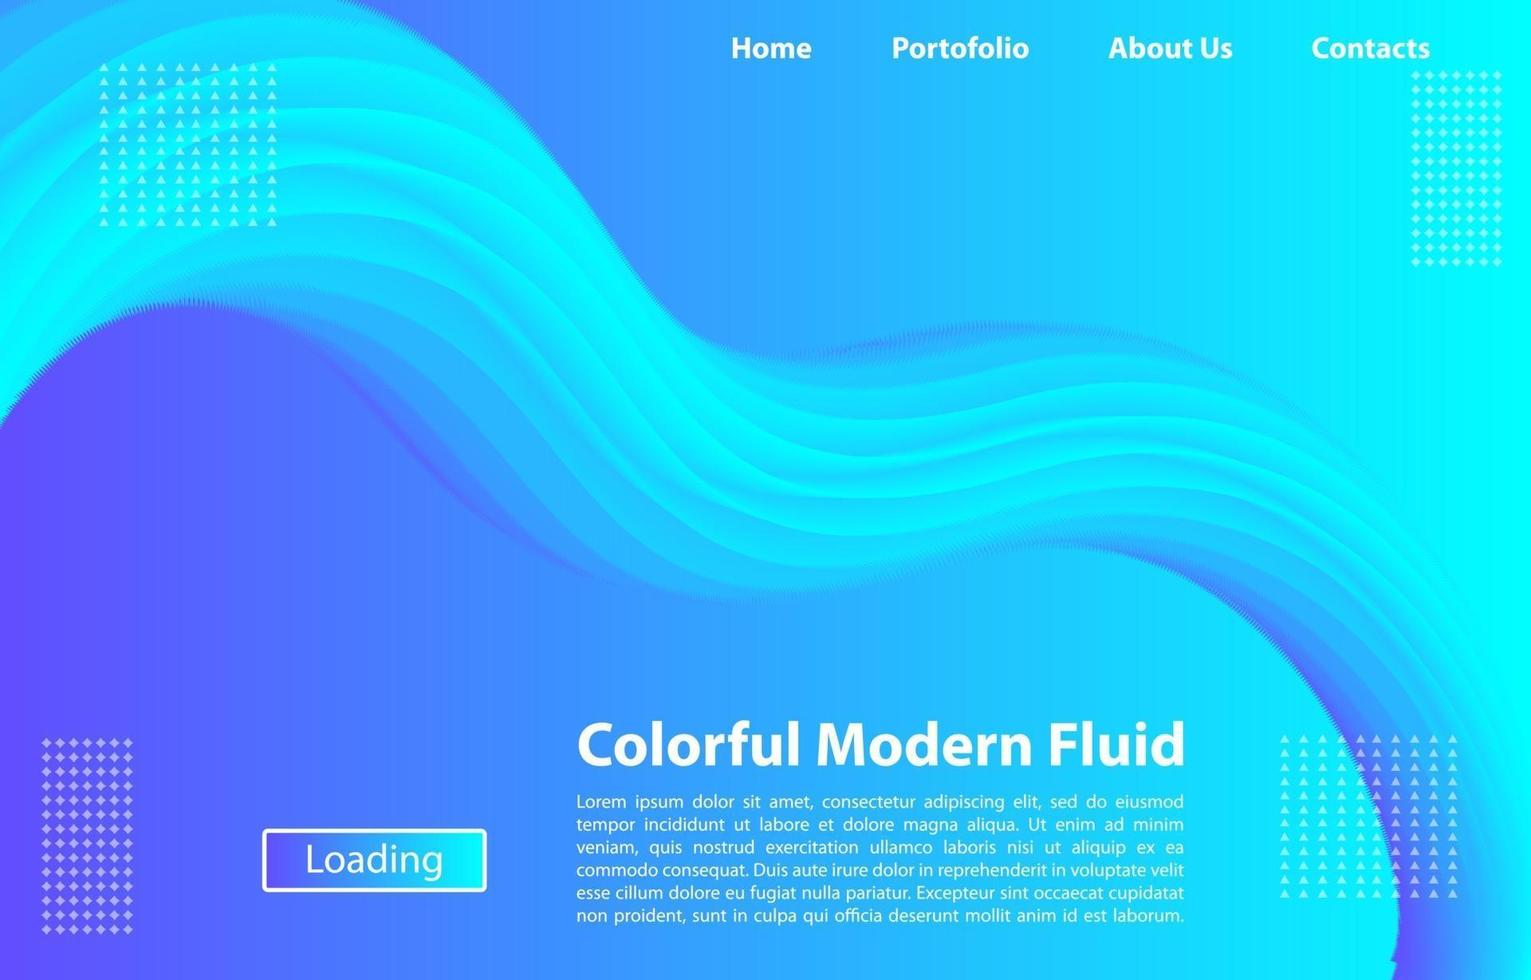 sfondo fluido moderno colorato 3d. modello di design per pagina di destinazione, banner, poster, copertina, ecc. vettore